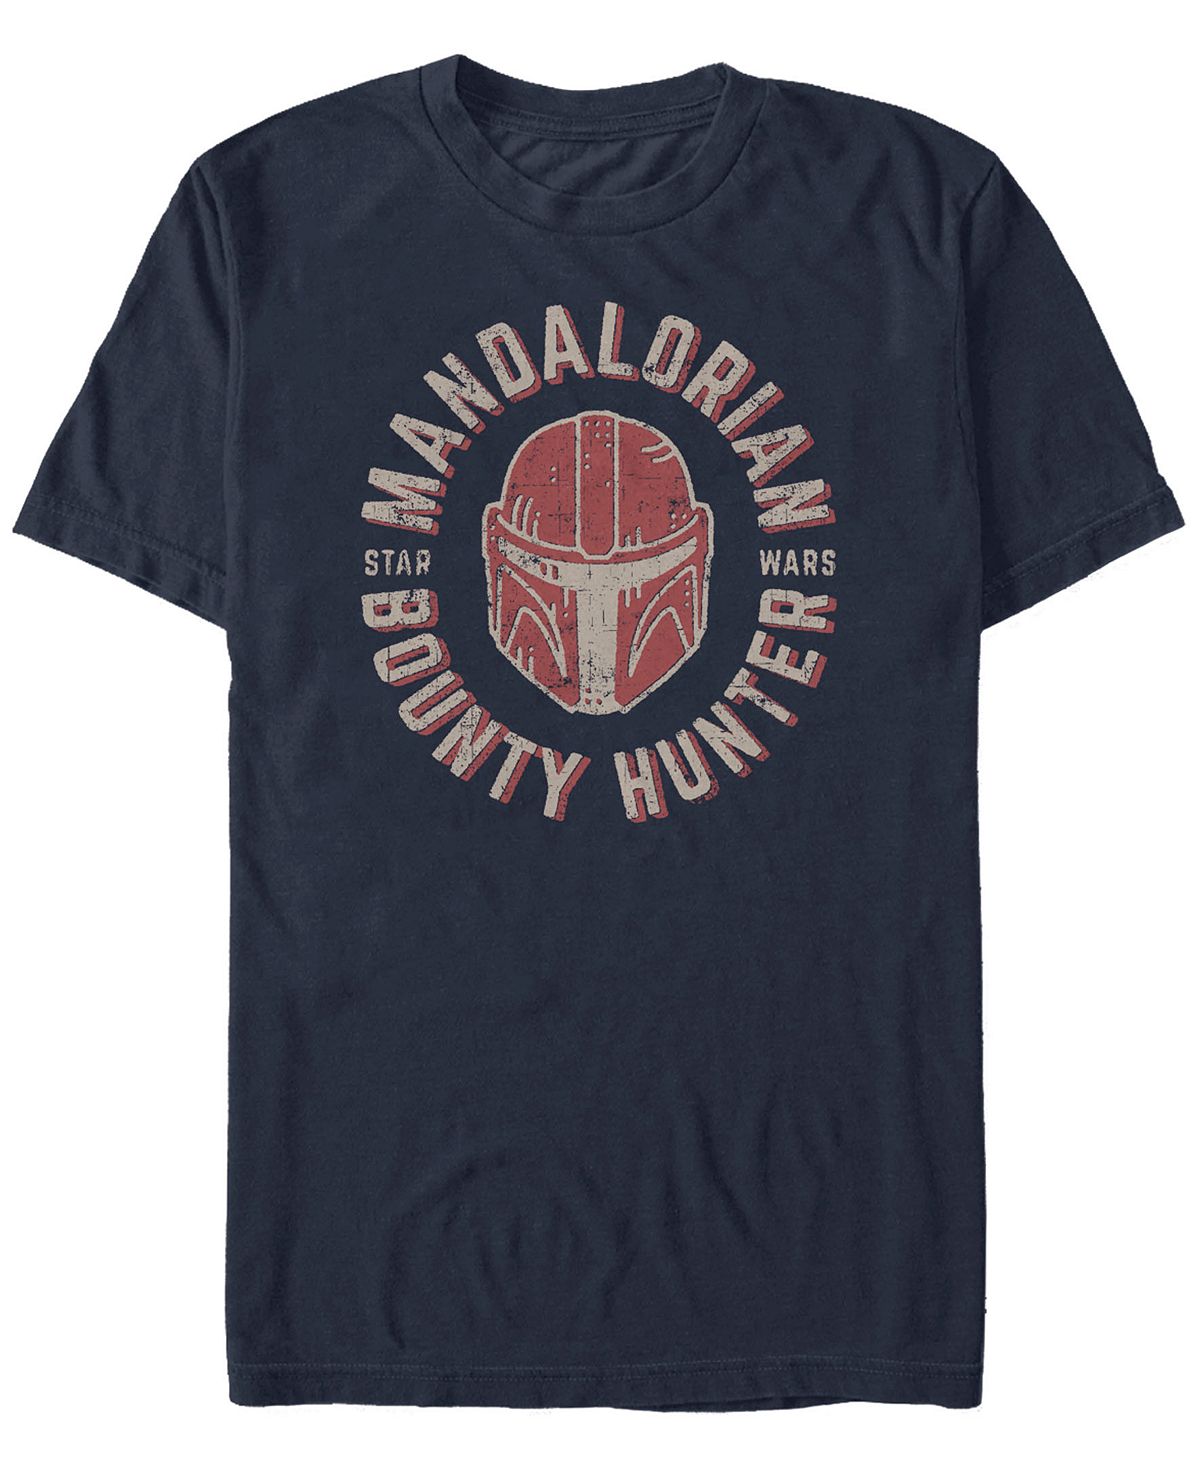 Мужская футболка с короткими рукавами и штампом «Звездные войны: Мандалорский шлем» Fifth Sun